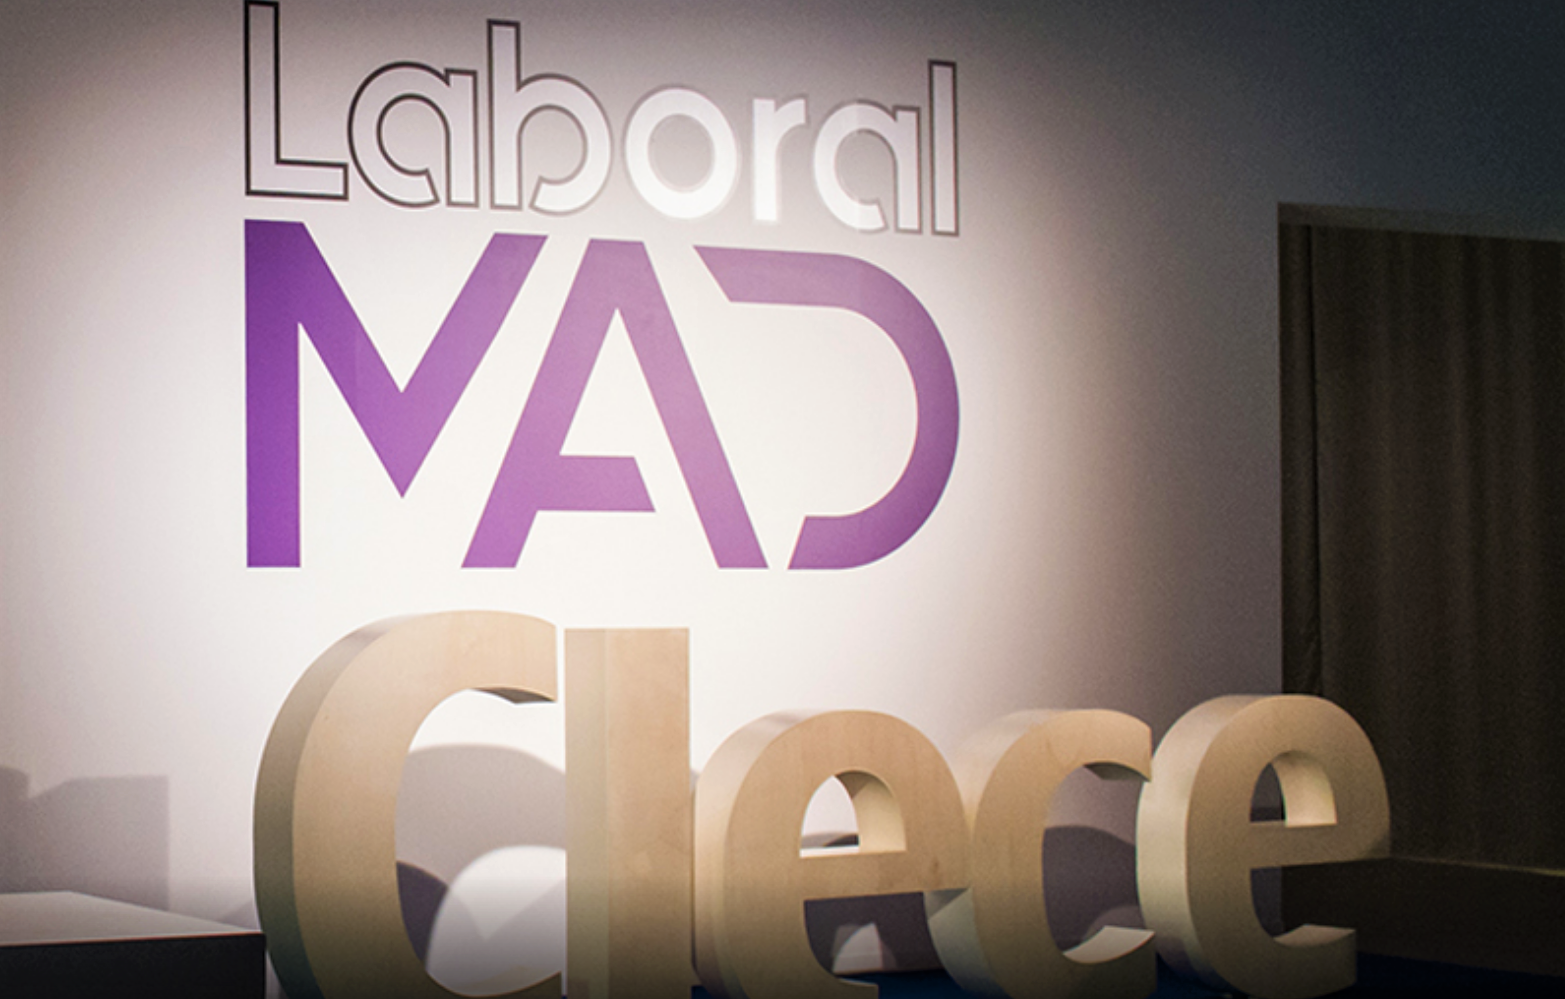 Evento Laboral MAD organizado por la empresa Clece. Youtube